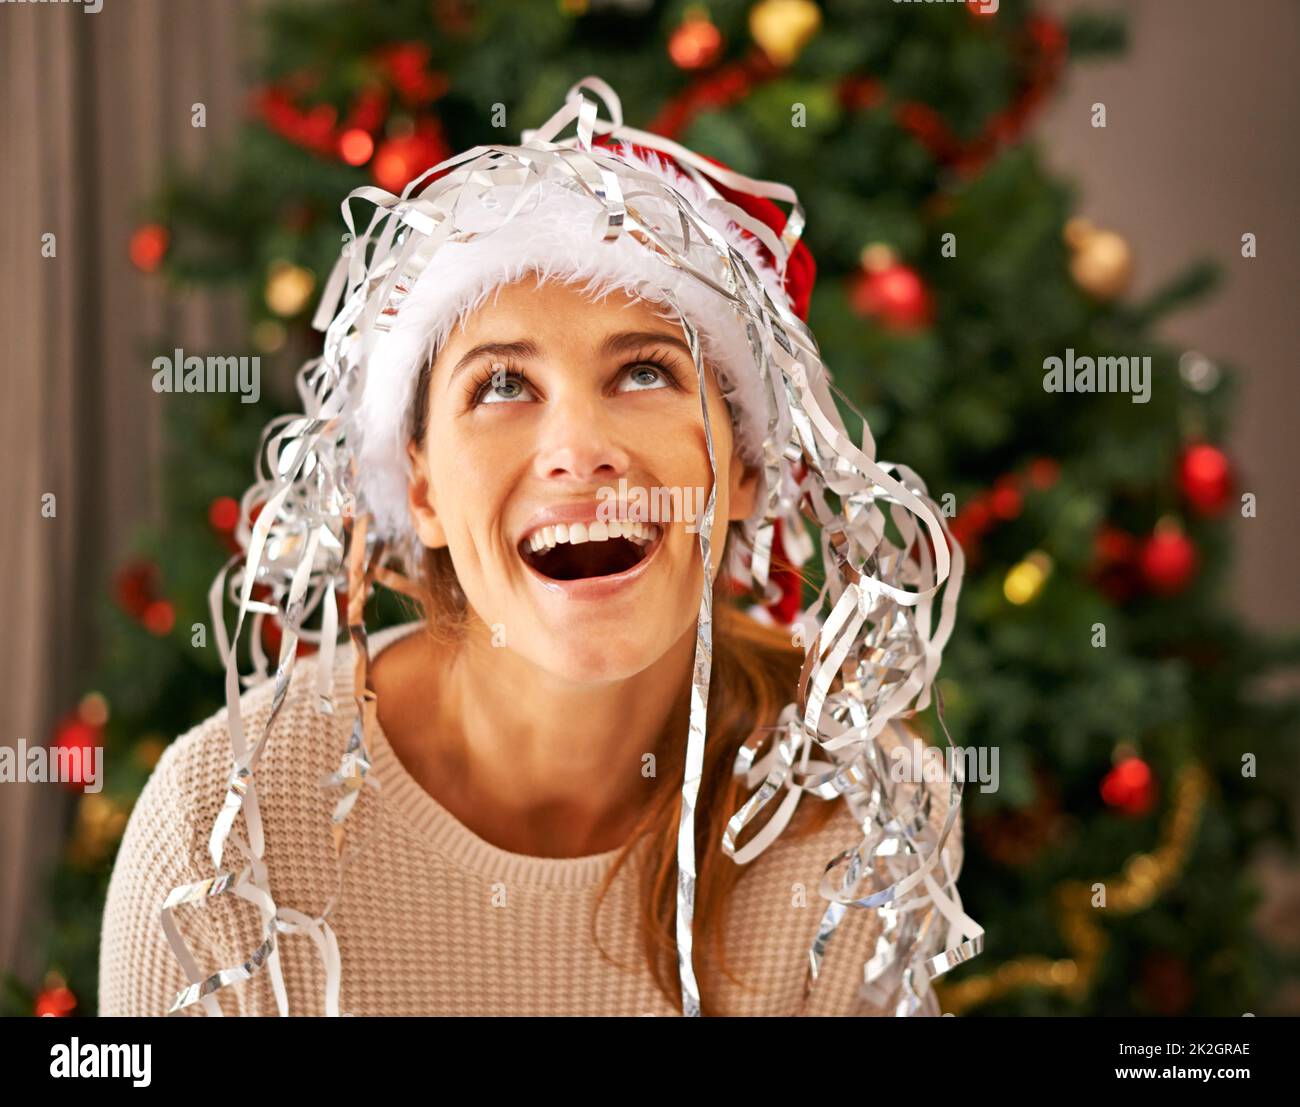 La sua nevicatura. Scatto di una bella giovane donna godendo di un momento giocoso con decorazioni di Natale. Foto Stock